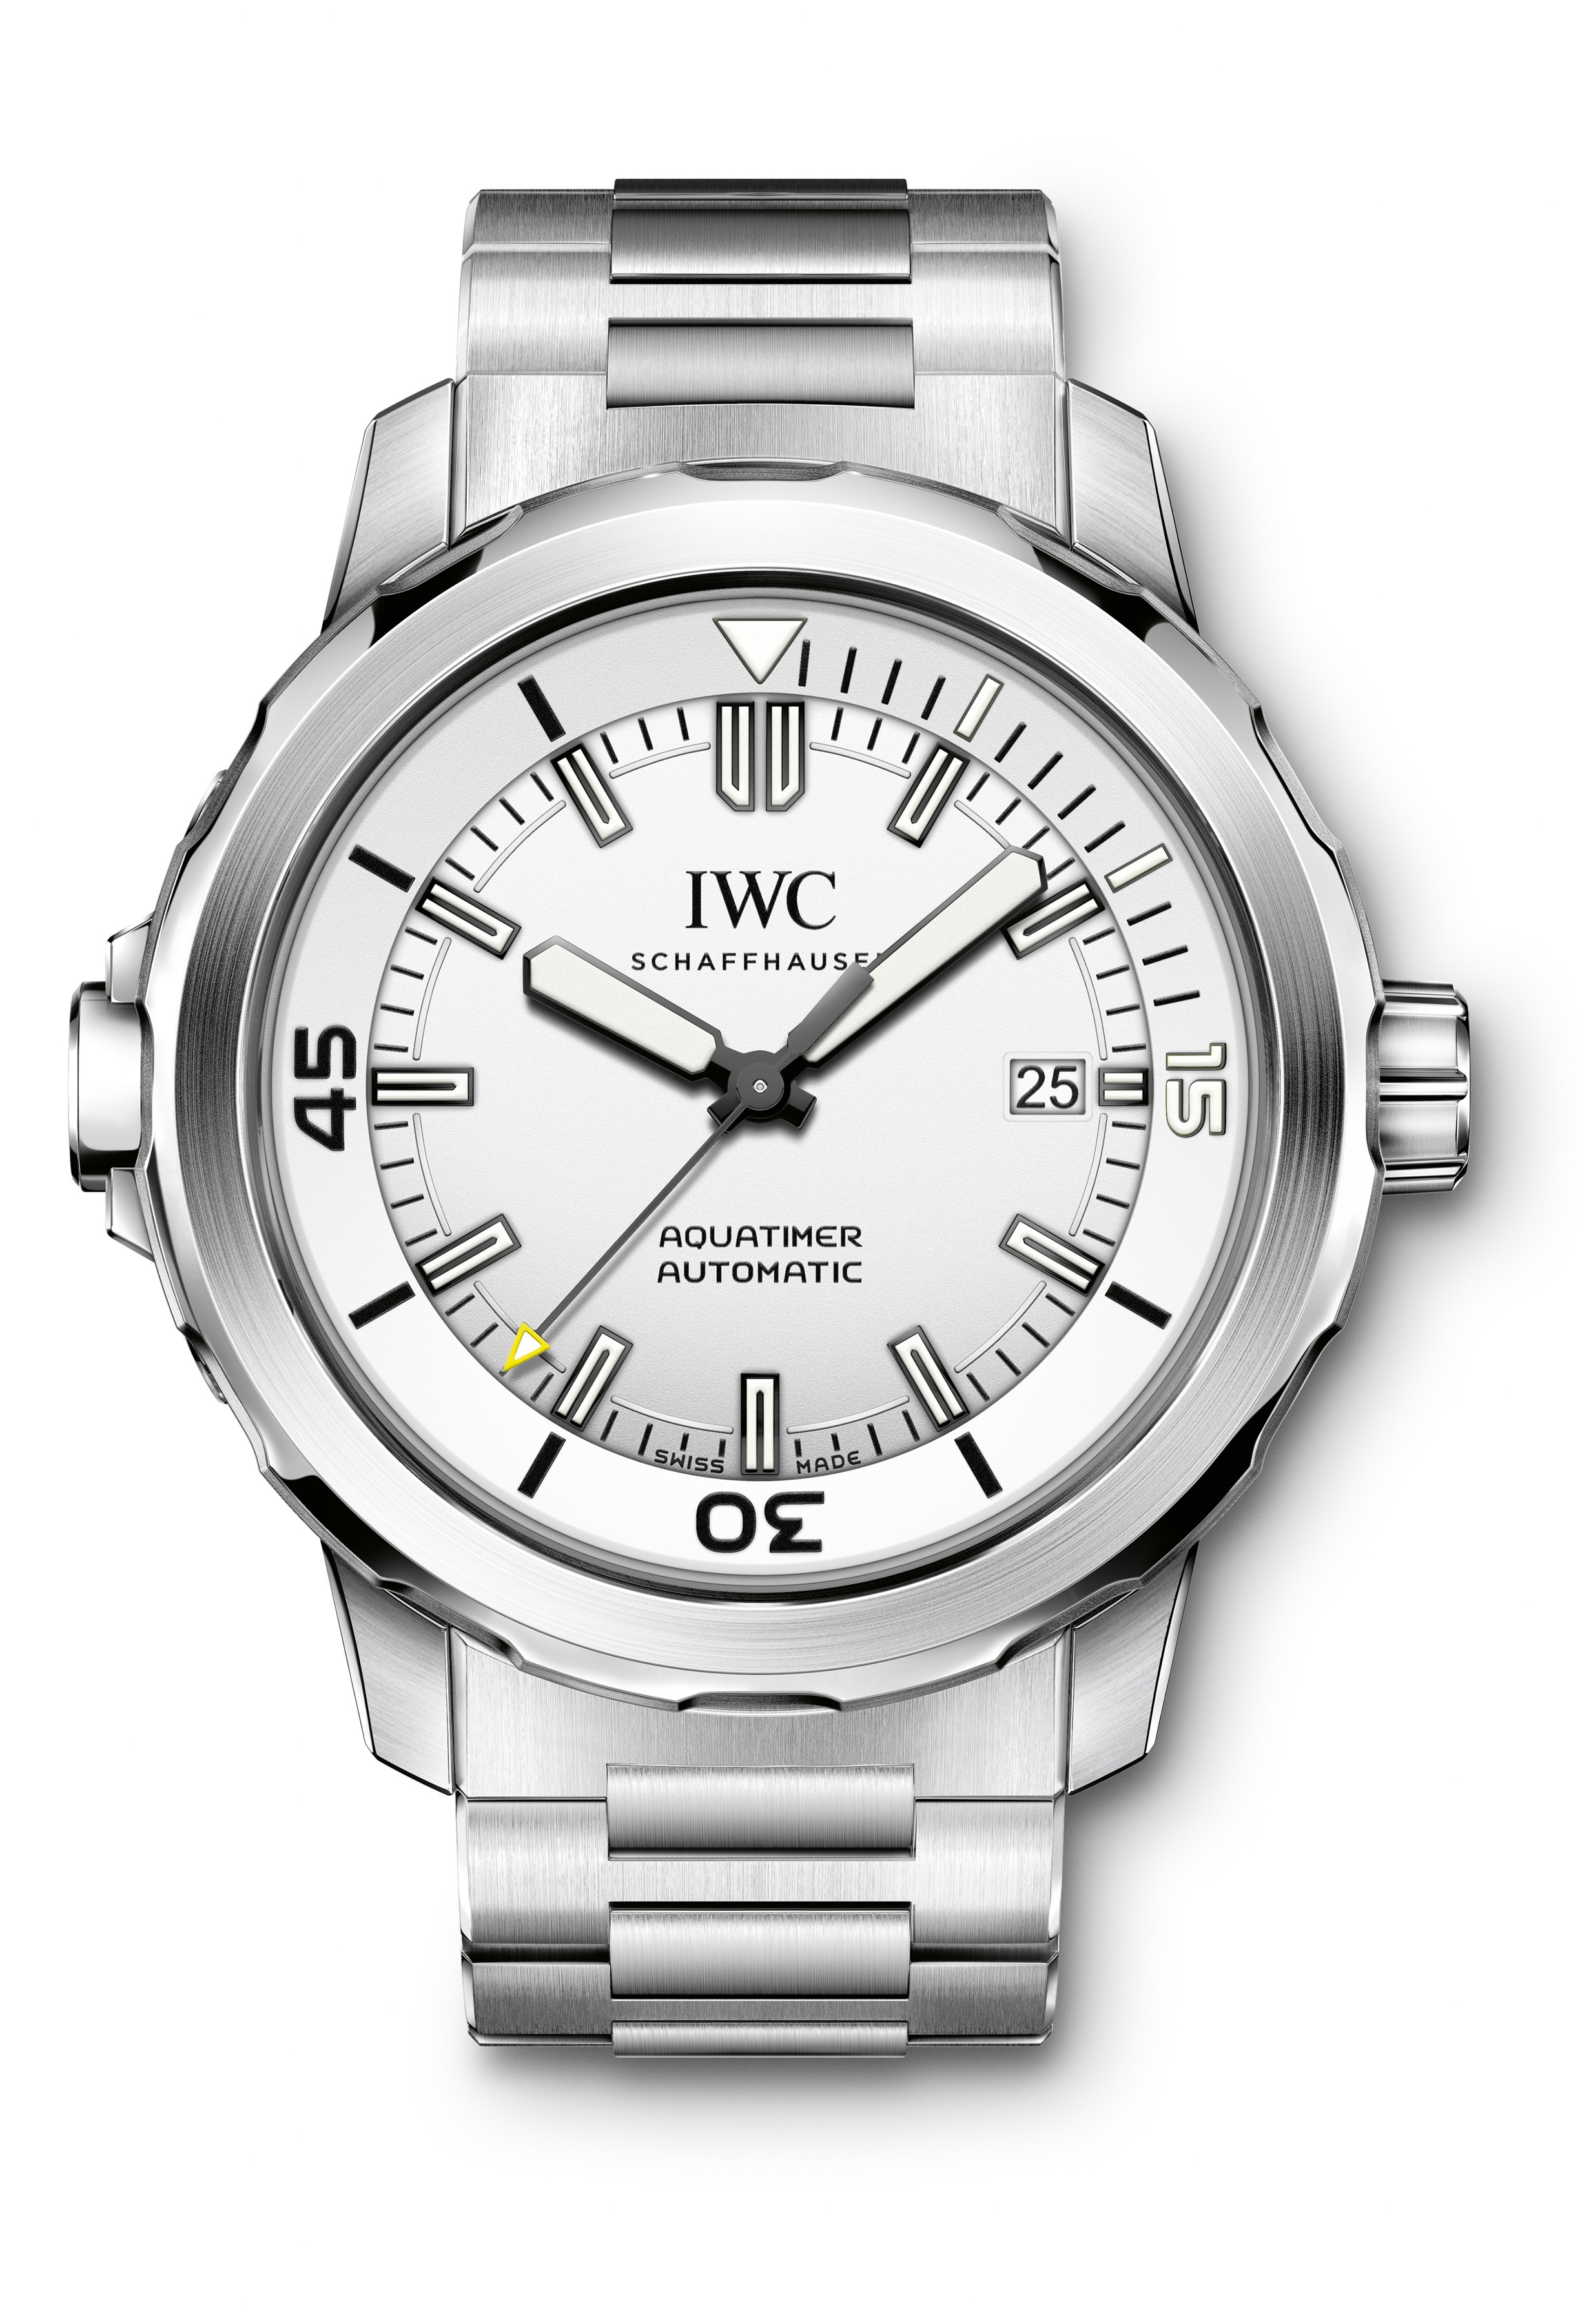 IWC Aquatimer Automatique Chronographe Montre Réplique